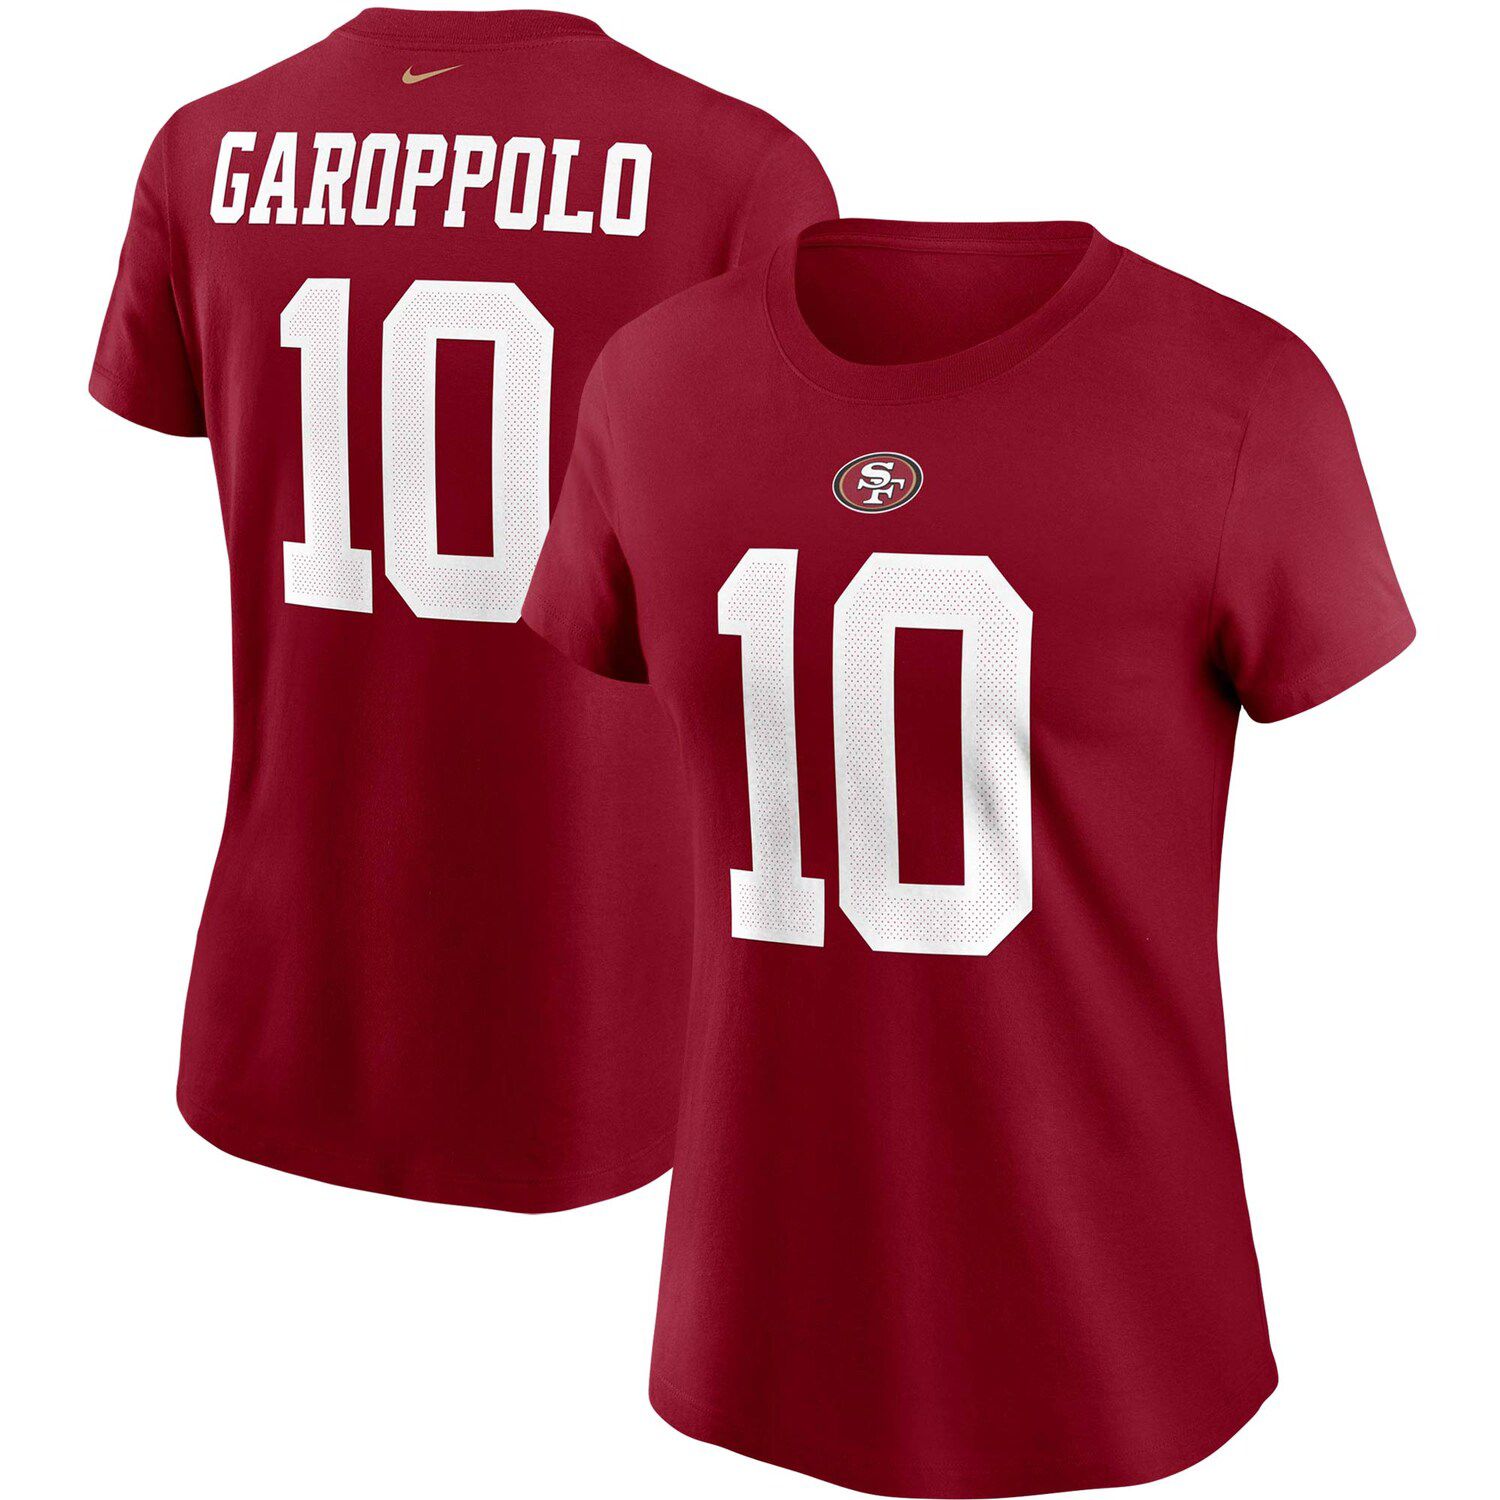 jimmy garoppolo women's shirt